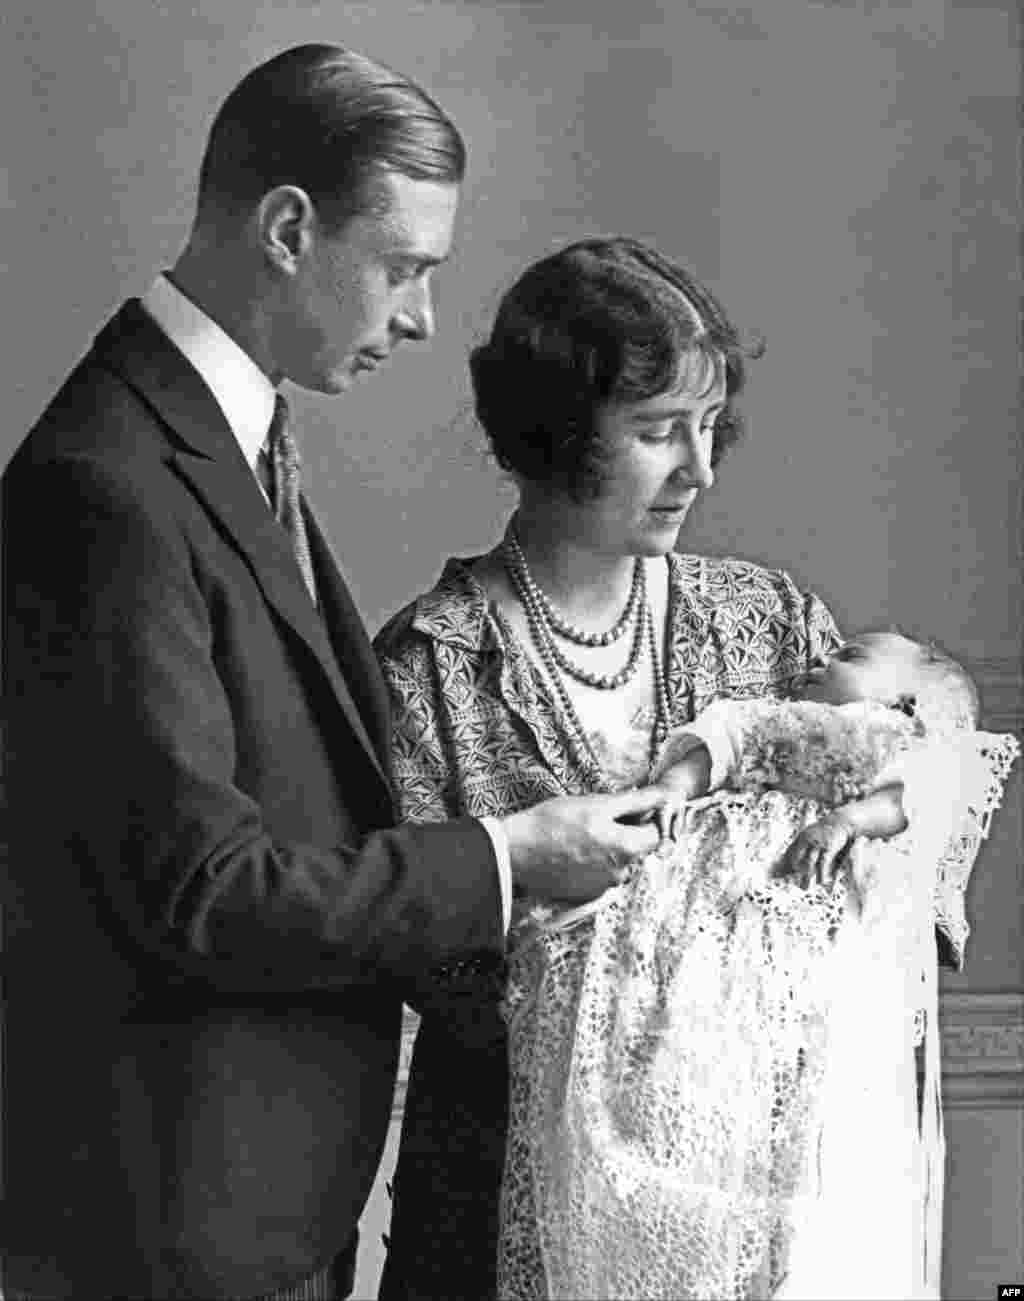 لیدی الیزابت آنجلا مارگریت بووز-لیون، دوشس یورک، در سال ۱۹۲۶ در لندن نخستین فرزندش شاهدخت الیزابت (ملکه الیزابت دوم) را در آغوش گرفته است. دوک یورک، پدر ملکه الیزابت دوم، در سال ۱۹۳۷ به سلطنت رسید و عنوان جرج ششم را برای خود برگزید.